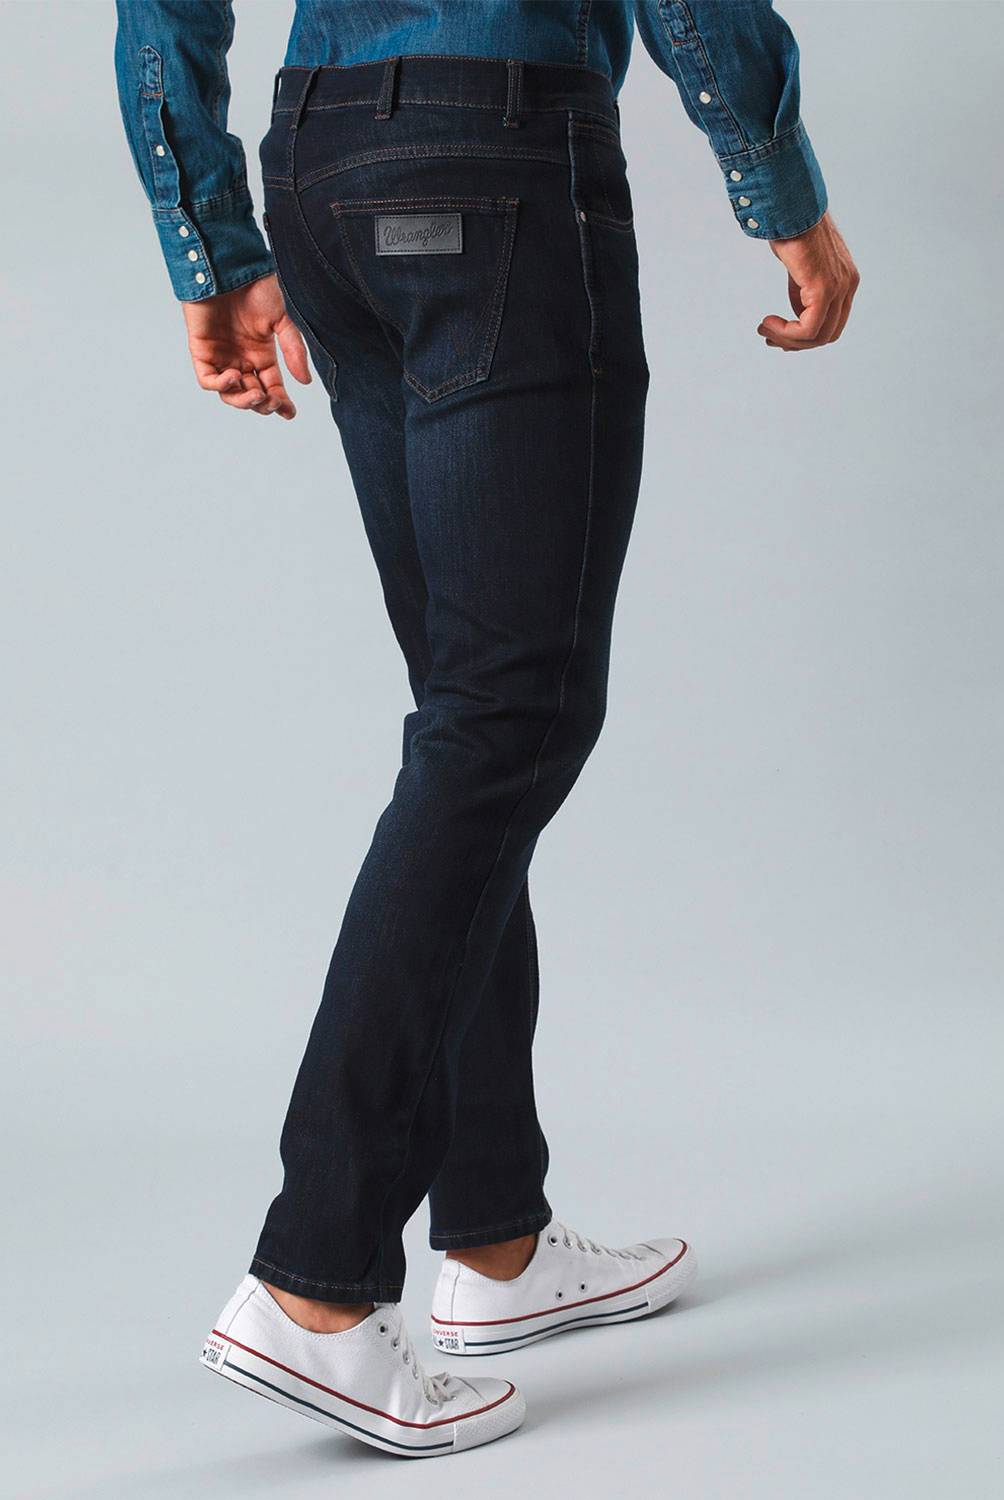 WRANGLER Wrangler Jeans Slim Fit Hombre | falabella.com